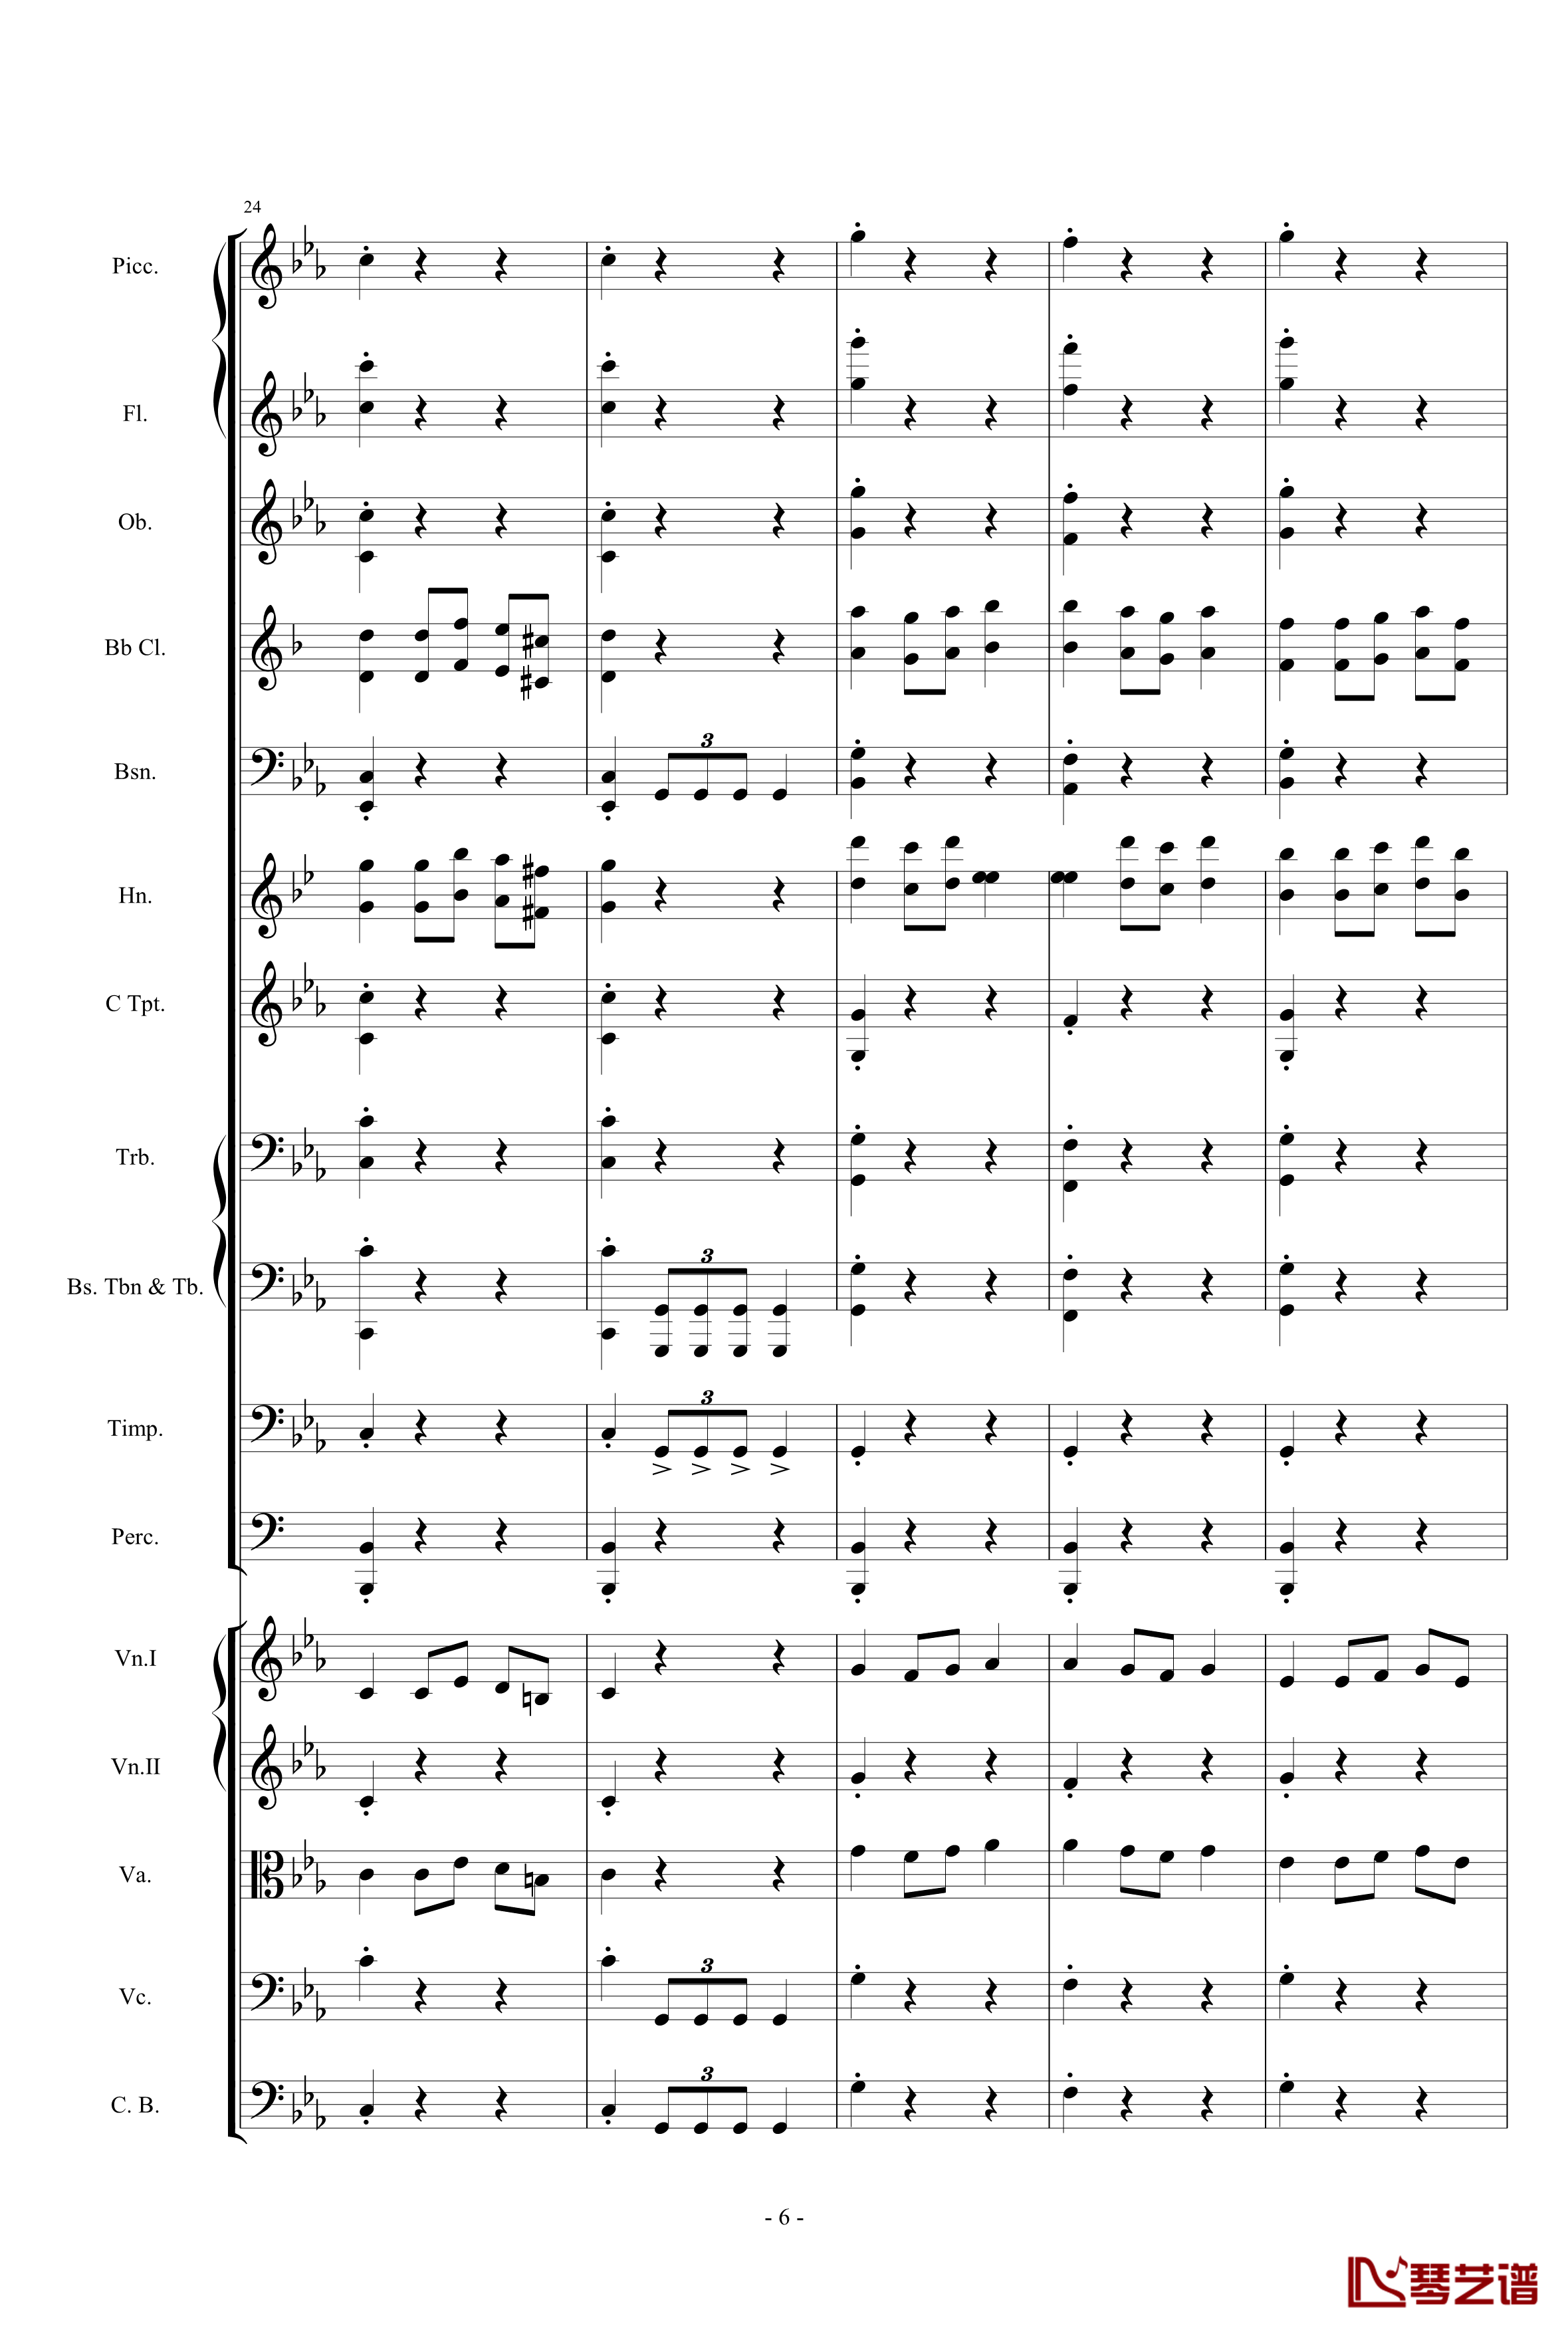 愤怒的小鸟交响曲第三乐章Op.5 no.3钢琴谱-105725786